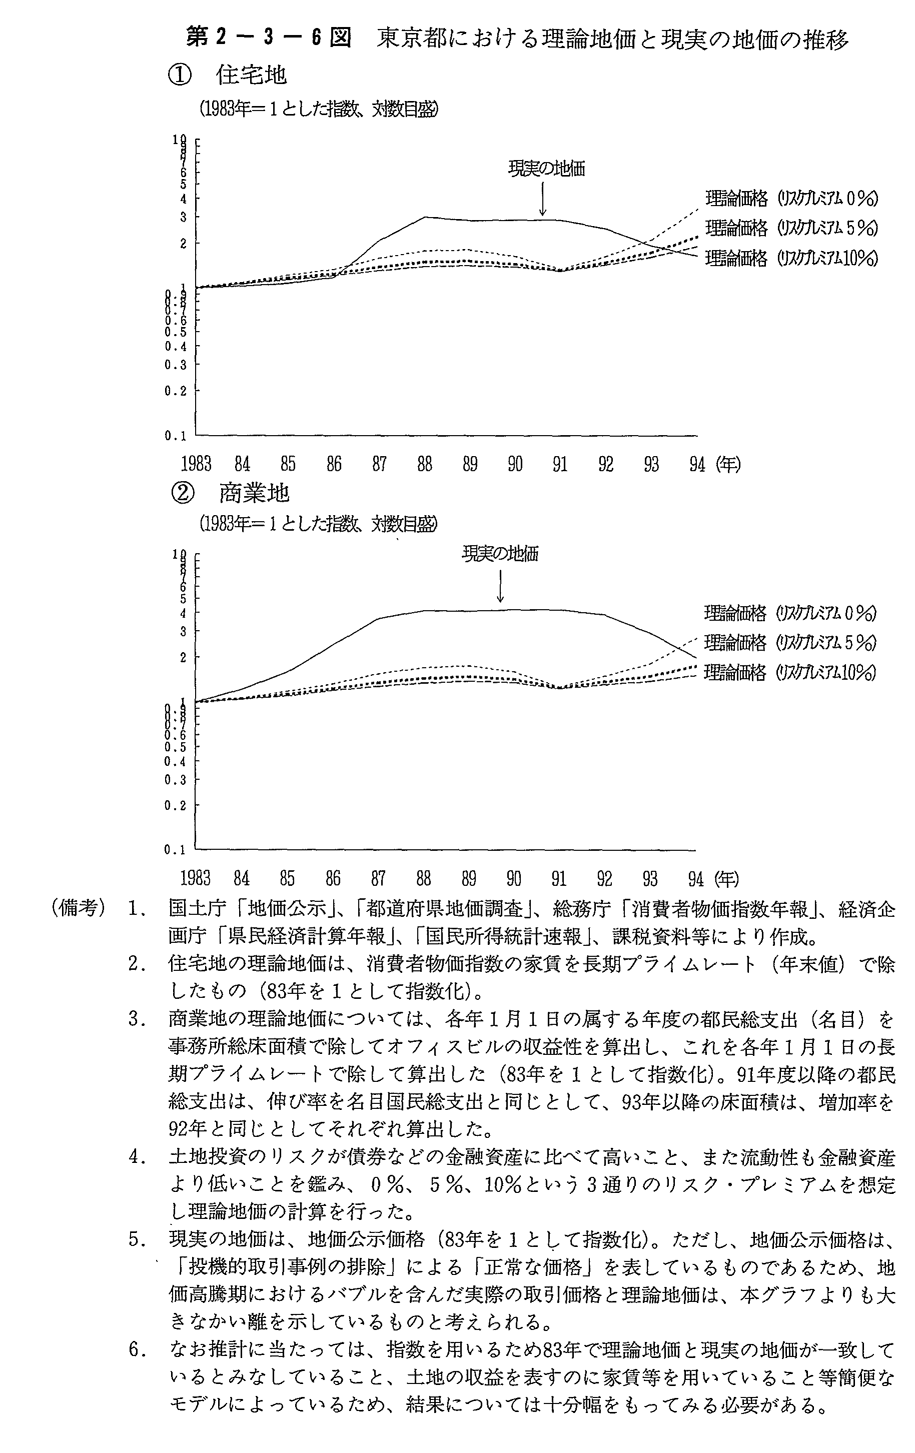  第2-3-6図 東京都における理論地価と現実の地価の推移